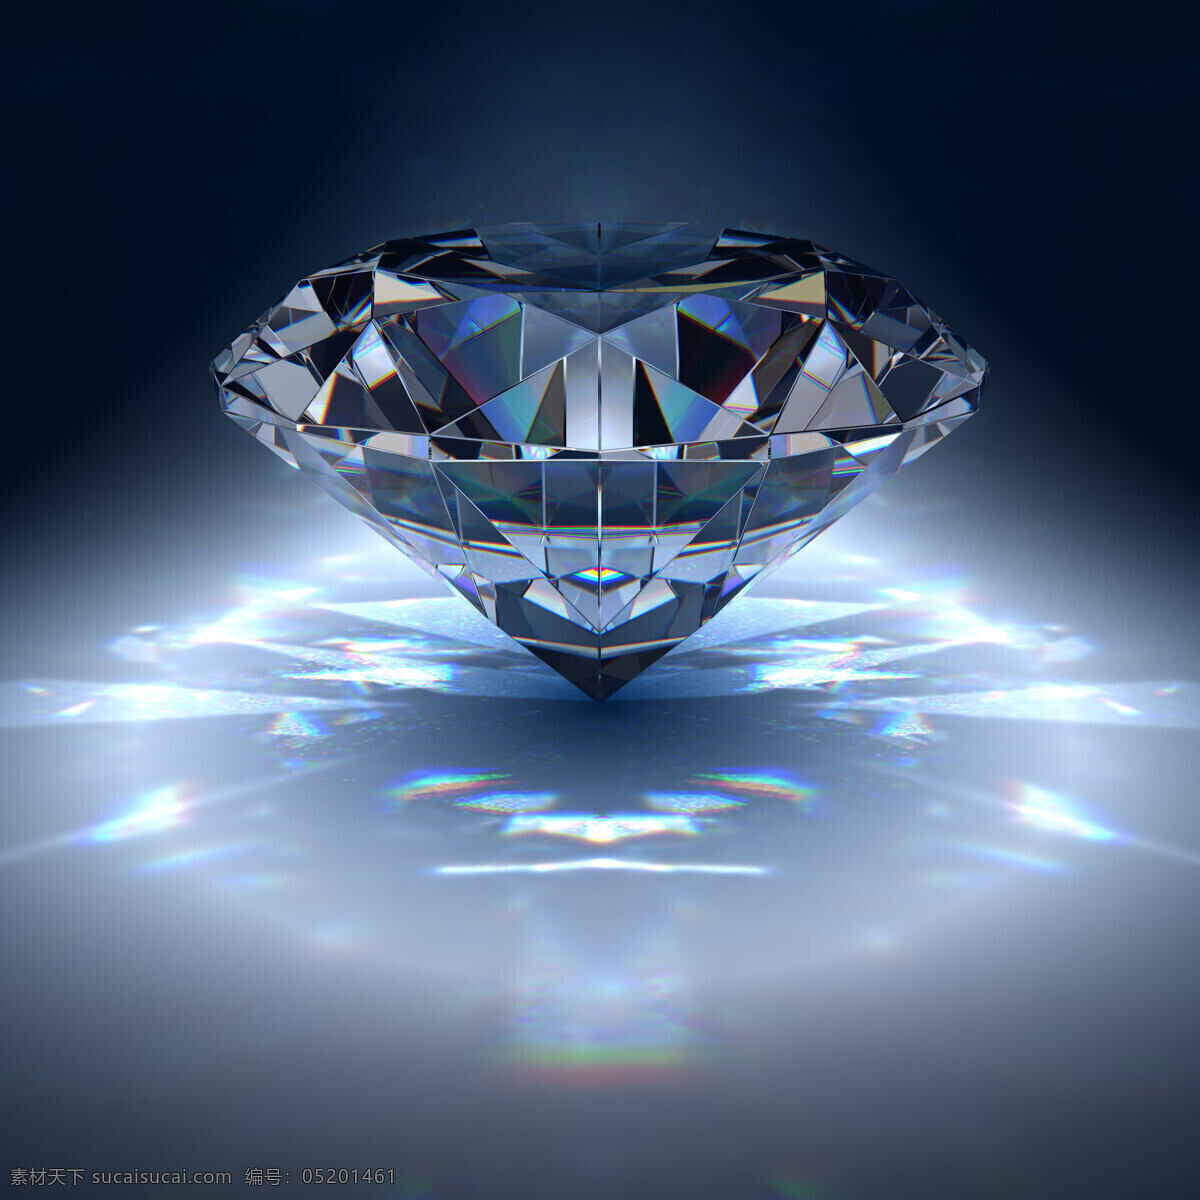 一颗大砖石 奢侈品 钻石 珠宝 闪闪发亮 珠宝服饰 生活百科 黑色